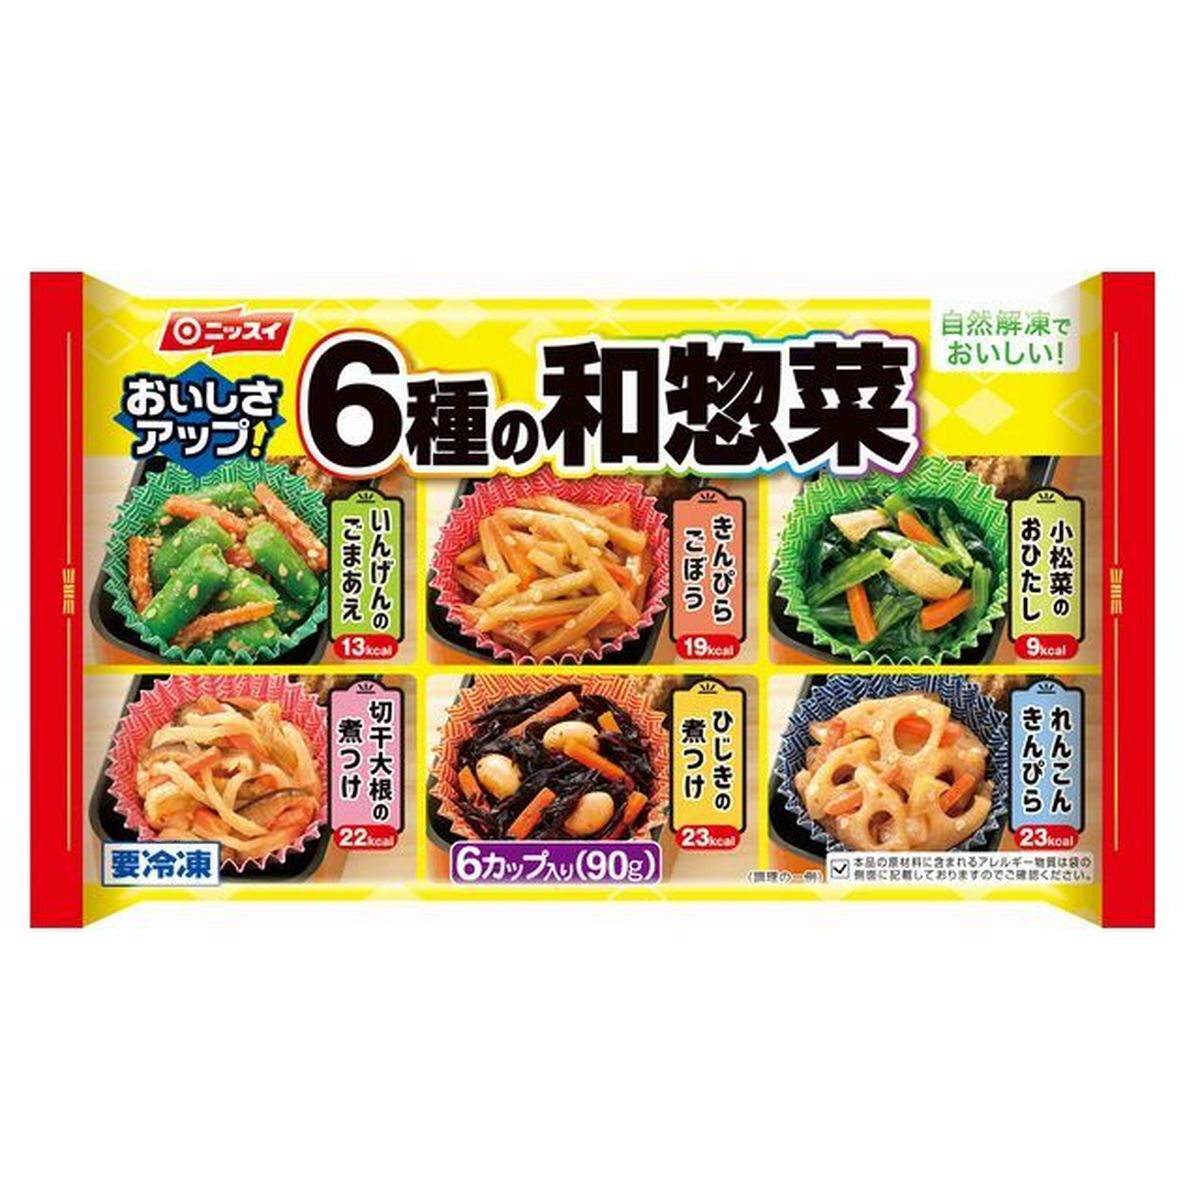 【冷凍】ニッスイ 6種の和惣菜 15春 6種x1個×14